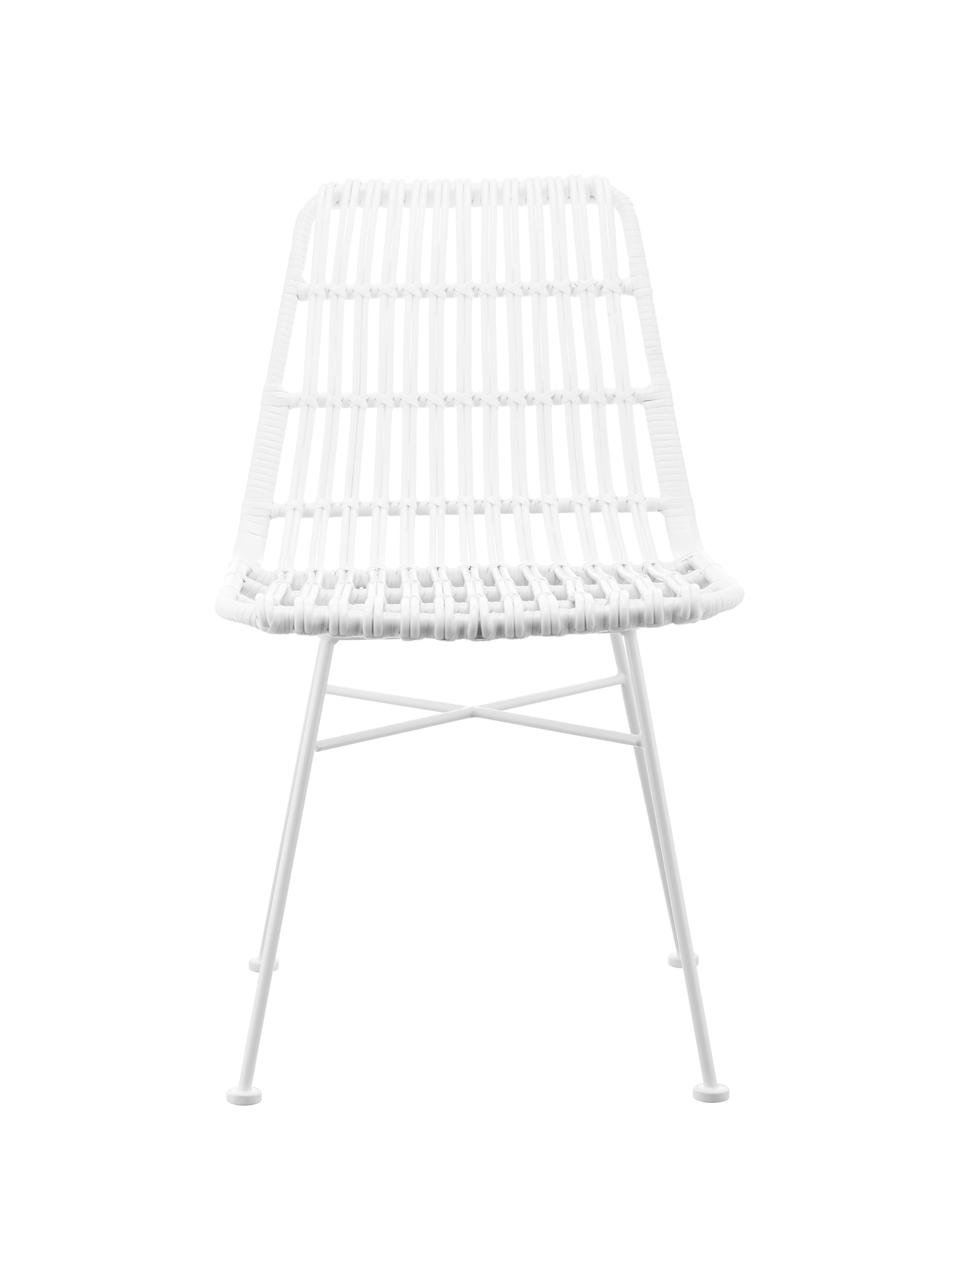 Polyrattan-Stühle Costa, 2 Stück, Sitzfläche: Polyethylen-Geflecht, Gestell: Metall, pulverbeschichtet, Weiss, Weiss, B 47 x T 61 cm